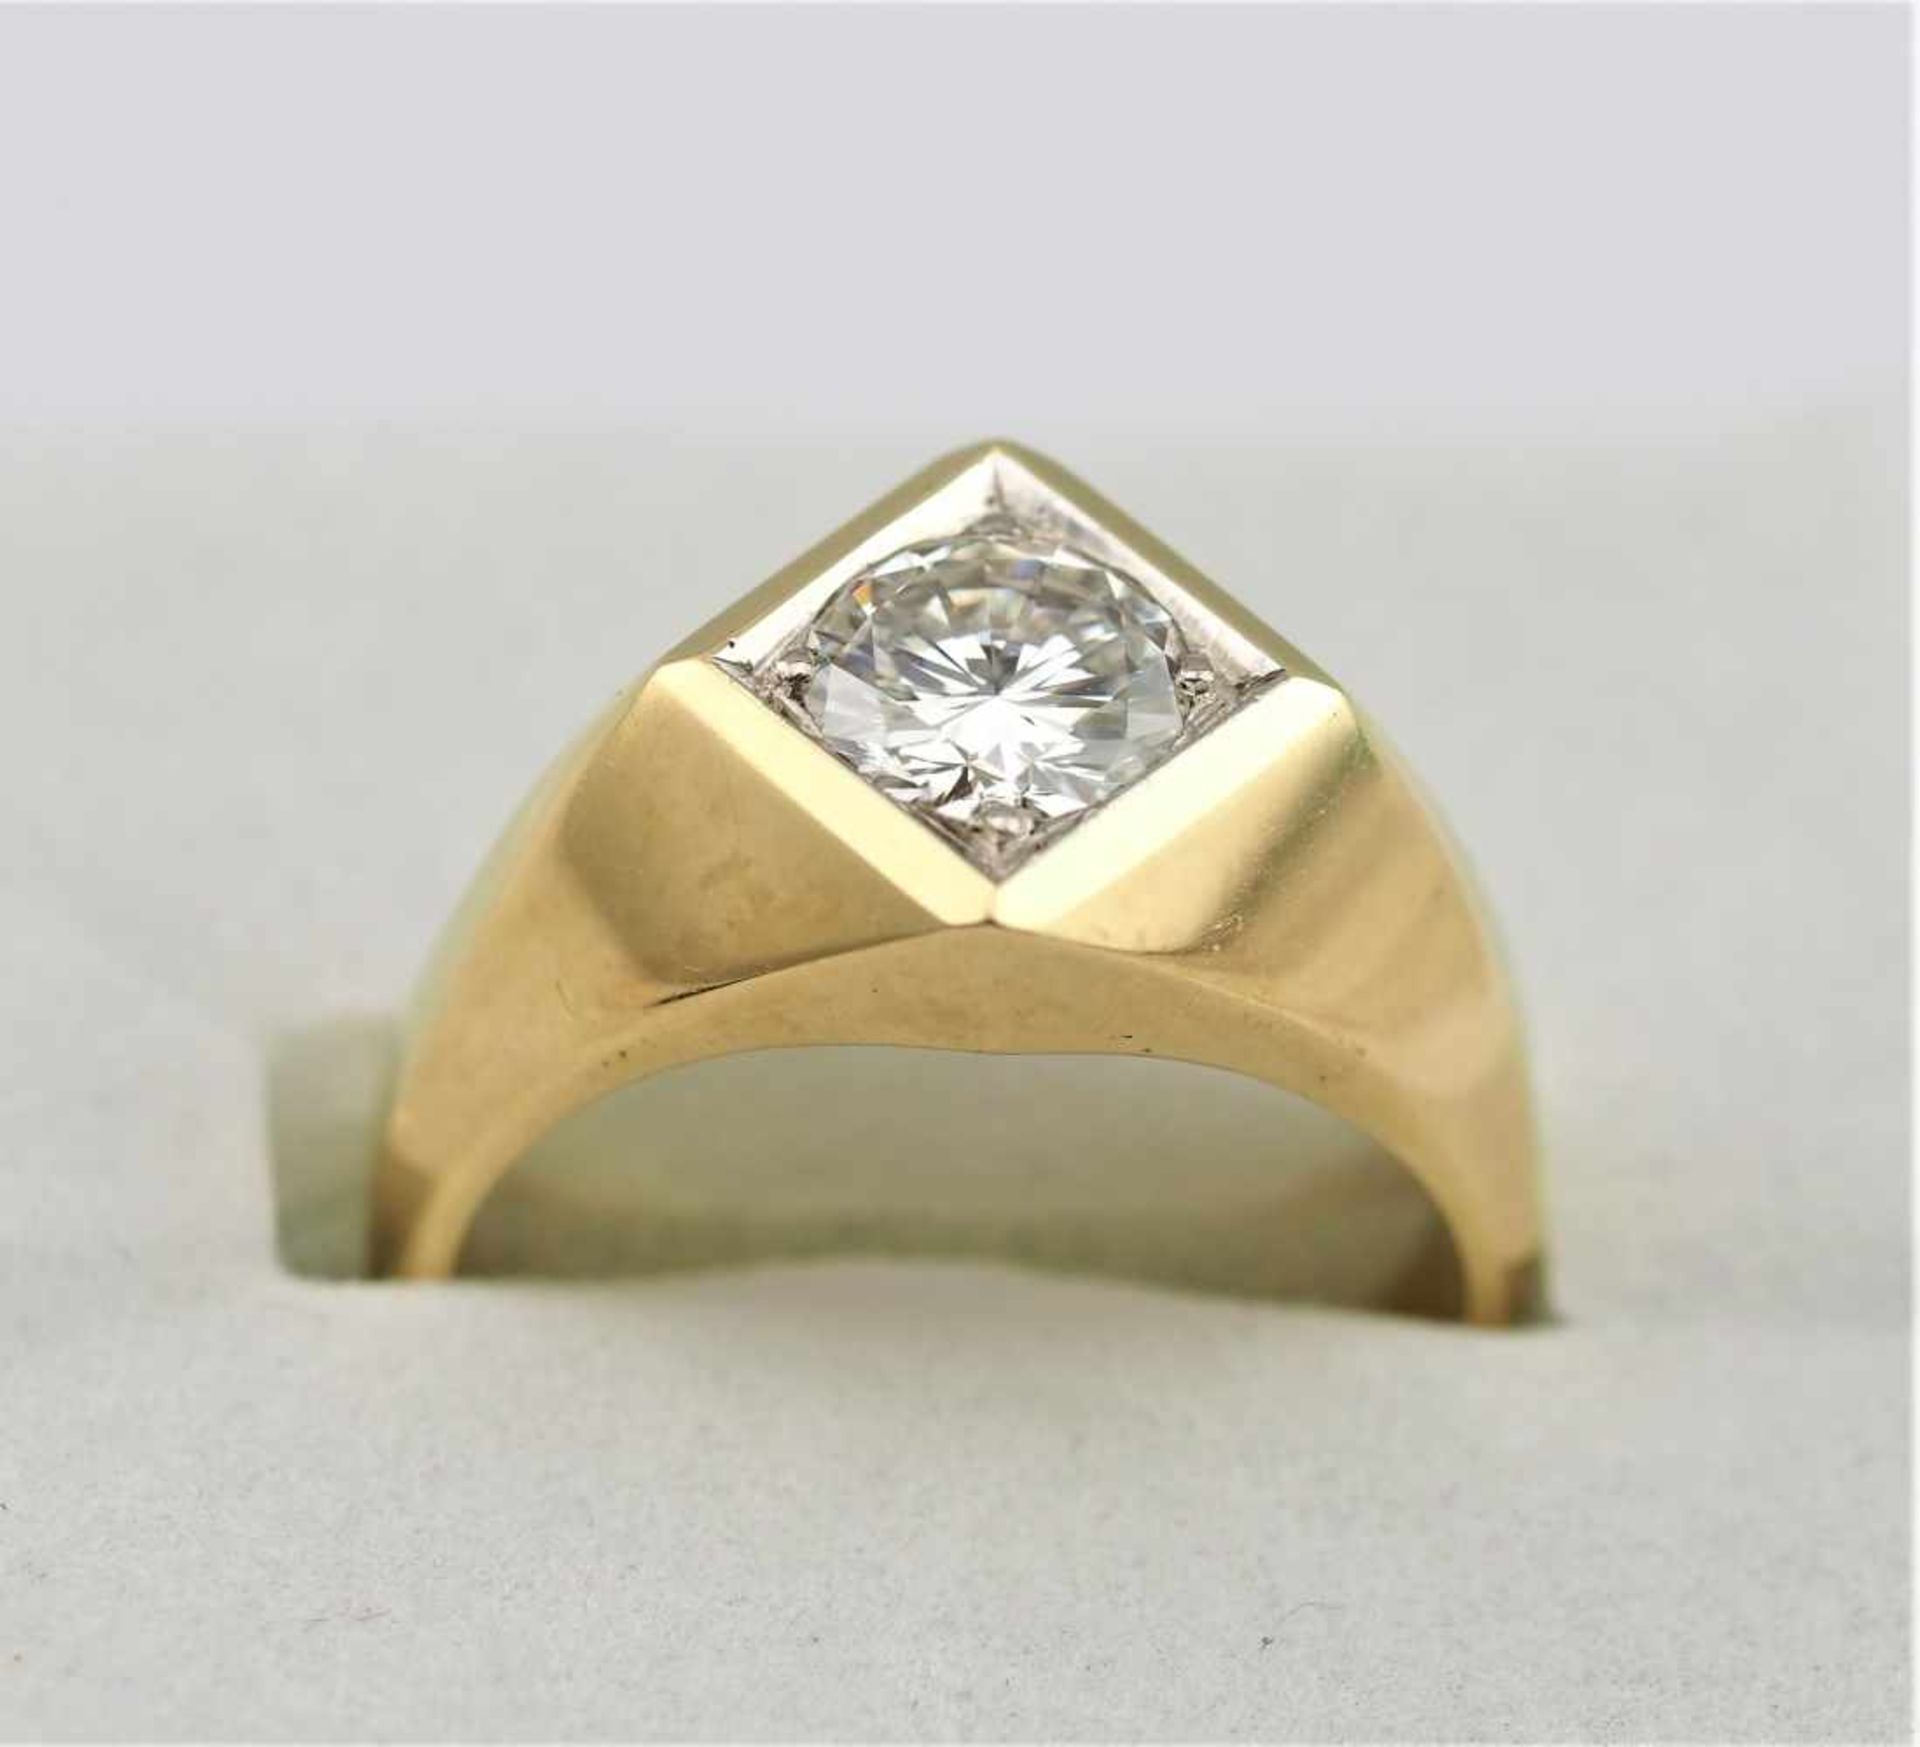 1,36ct Brillant Herrenring12,6g, 585 Gelbgold1.36ct brilliant cut, diamond men's ring12.6g, 585